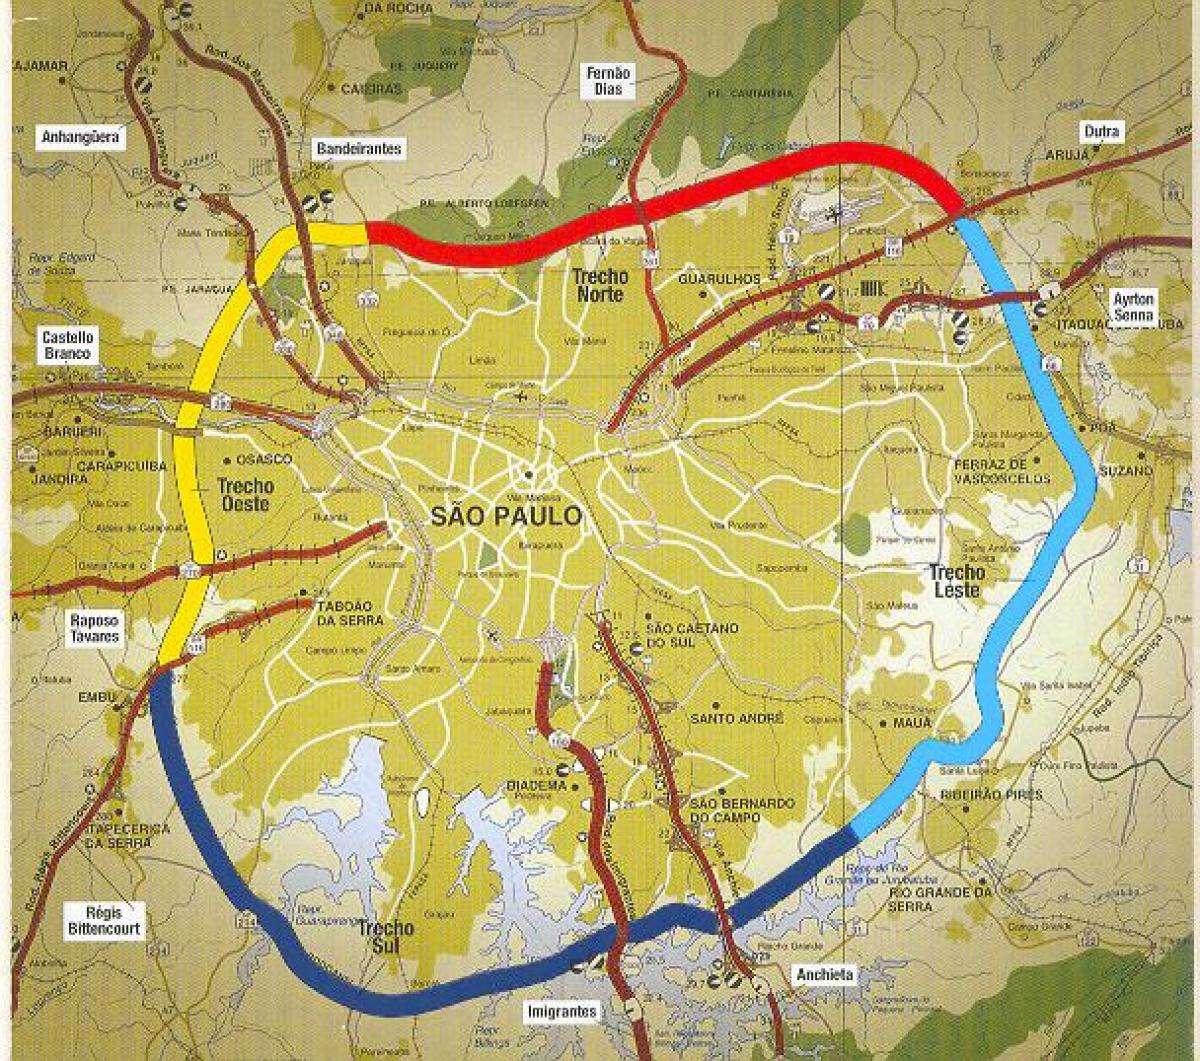 نقشہ کی ساؤ پالو beltway